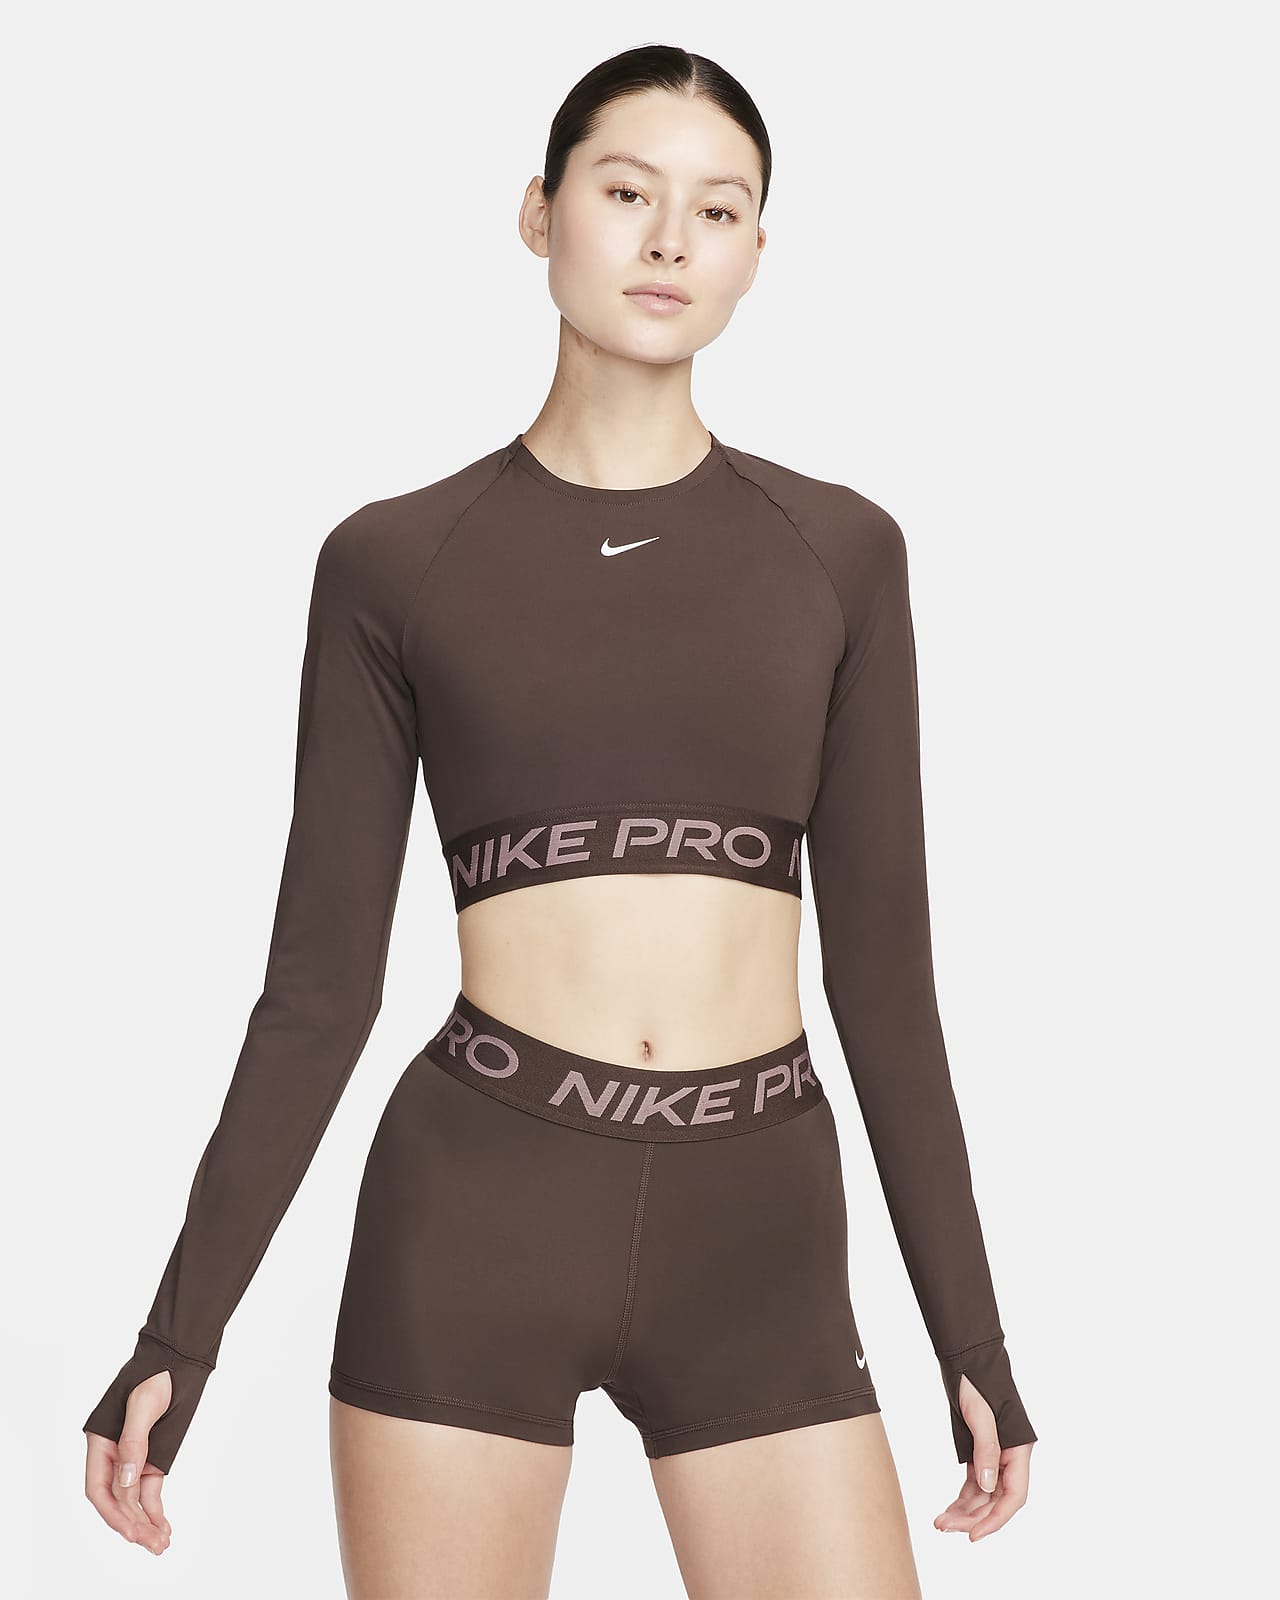 Nike Pro Dri-FIT rövid szabású, hosszú ujjú női felső